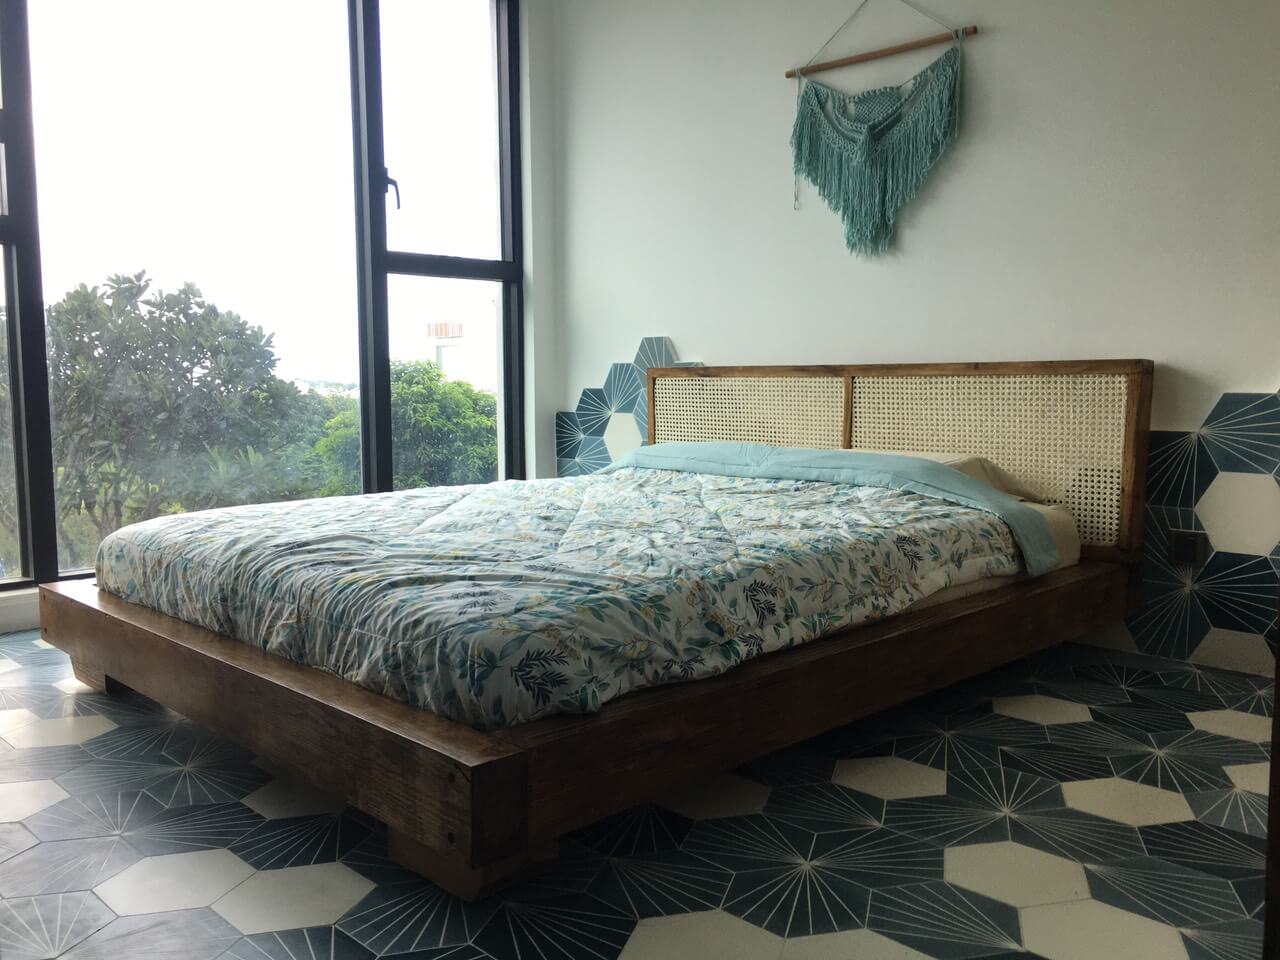 Cách decor phòng ngủ nhỏ đơn giản nhưng siêu xinh với gạch bông